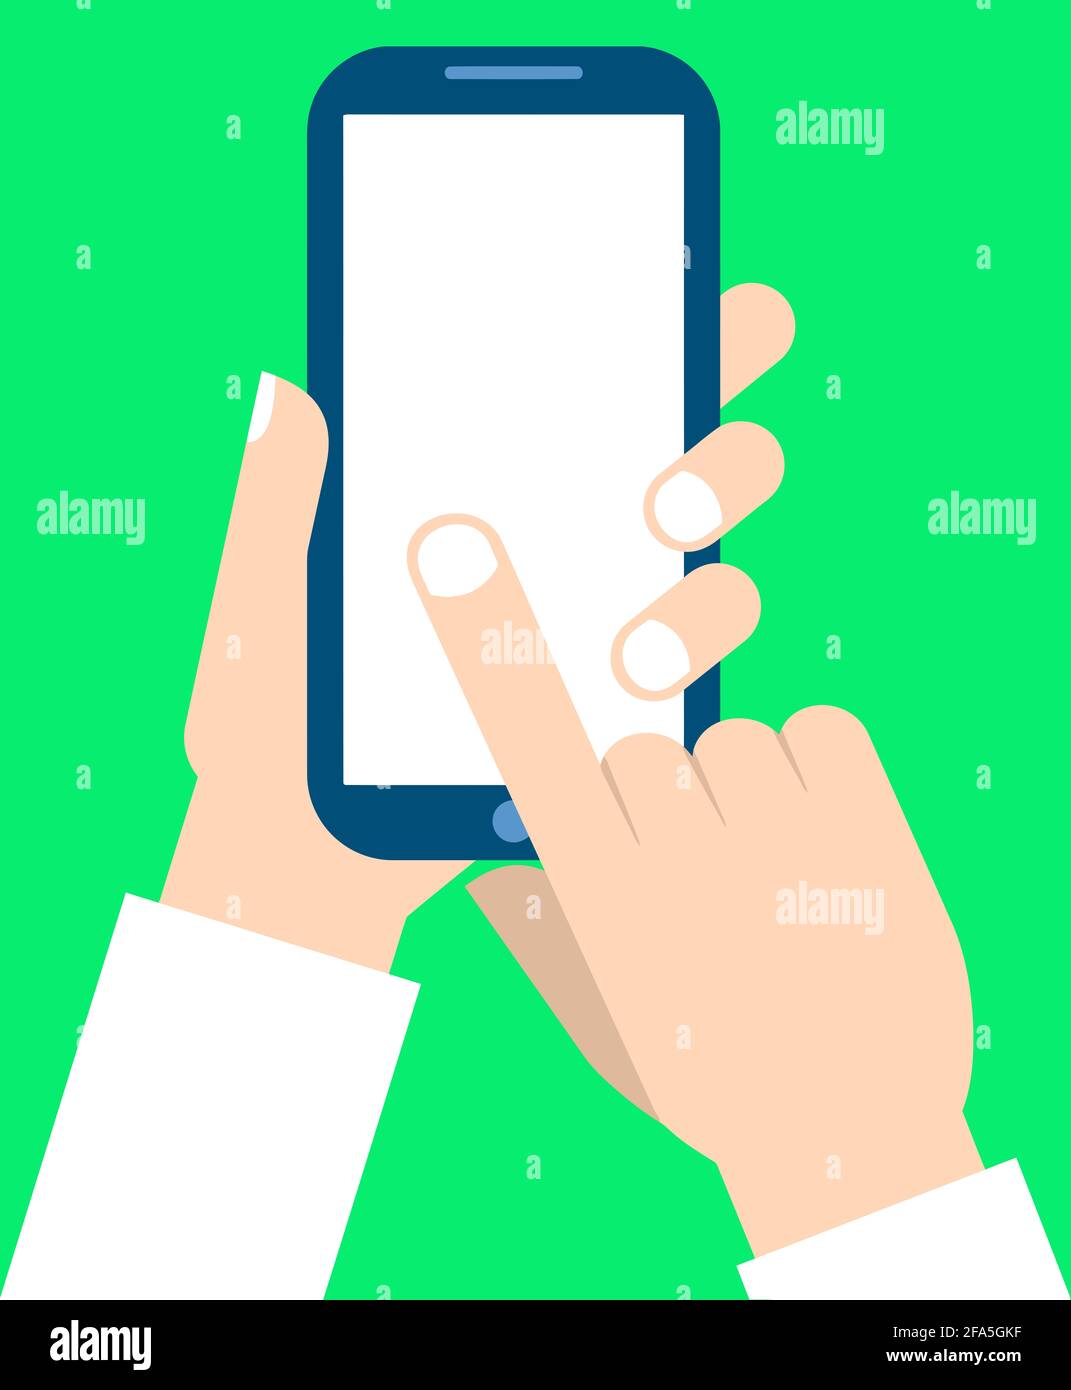 Abbildung: Smartphone Hand-Hold-Technologie für die Kommunikation Stockfoto